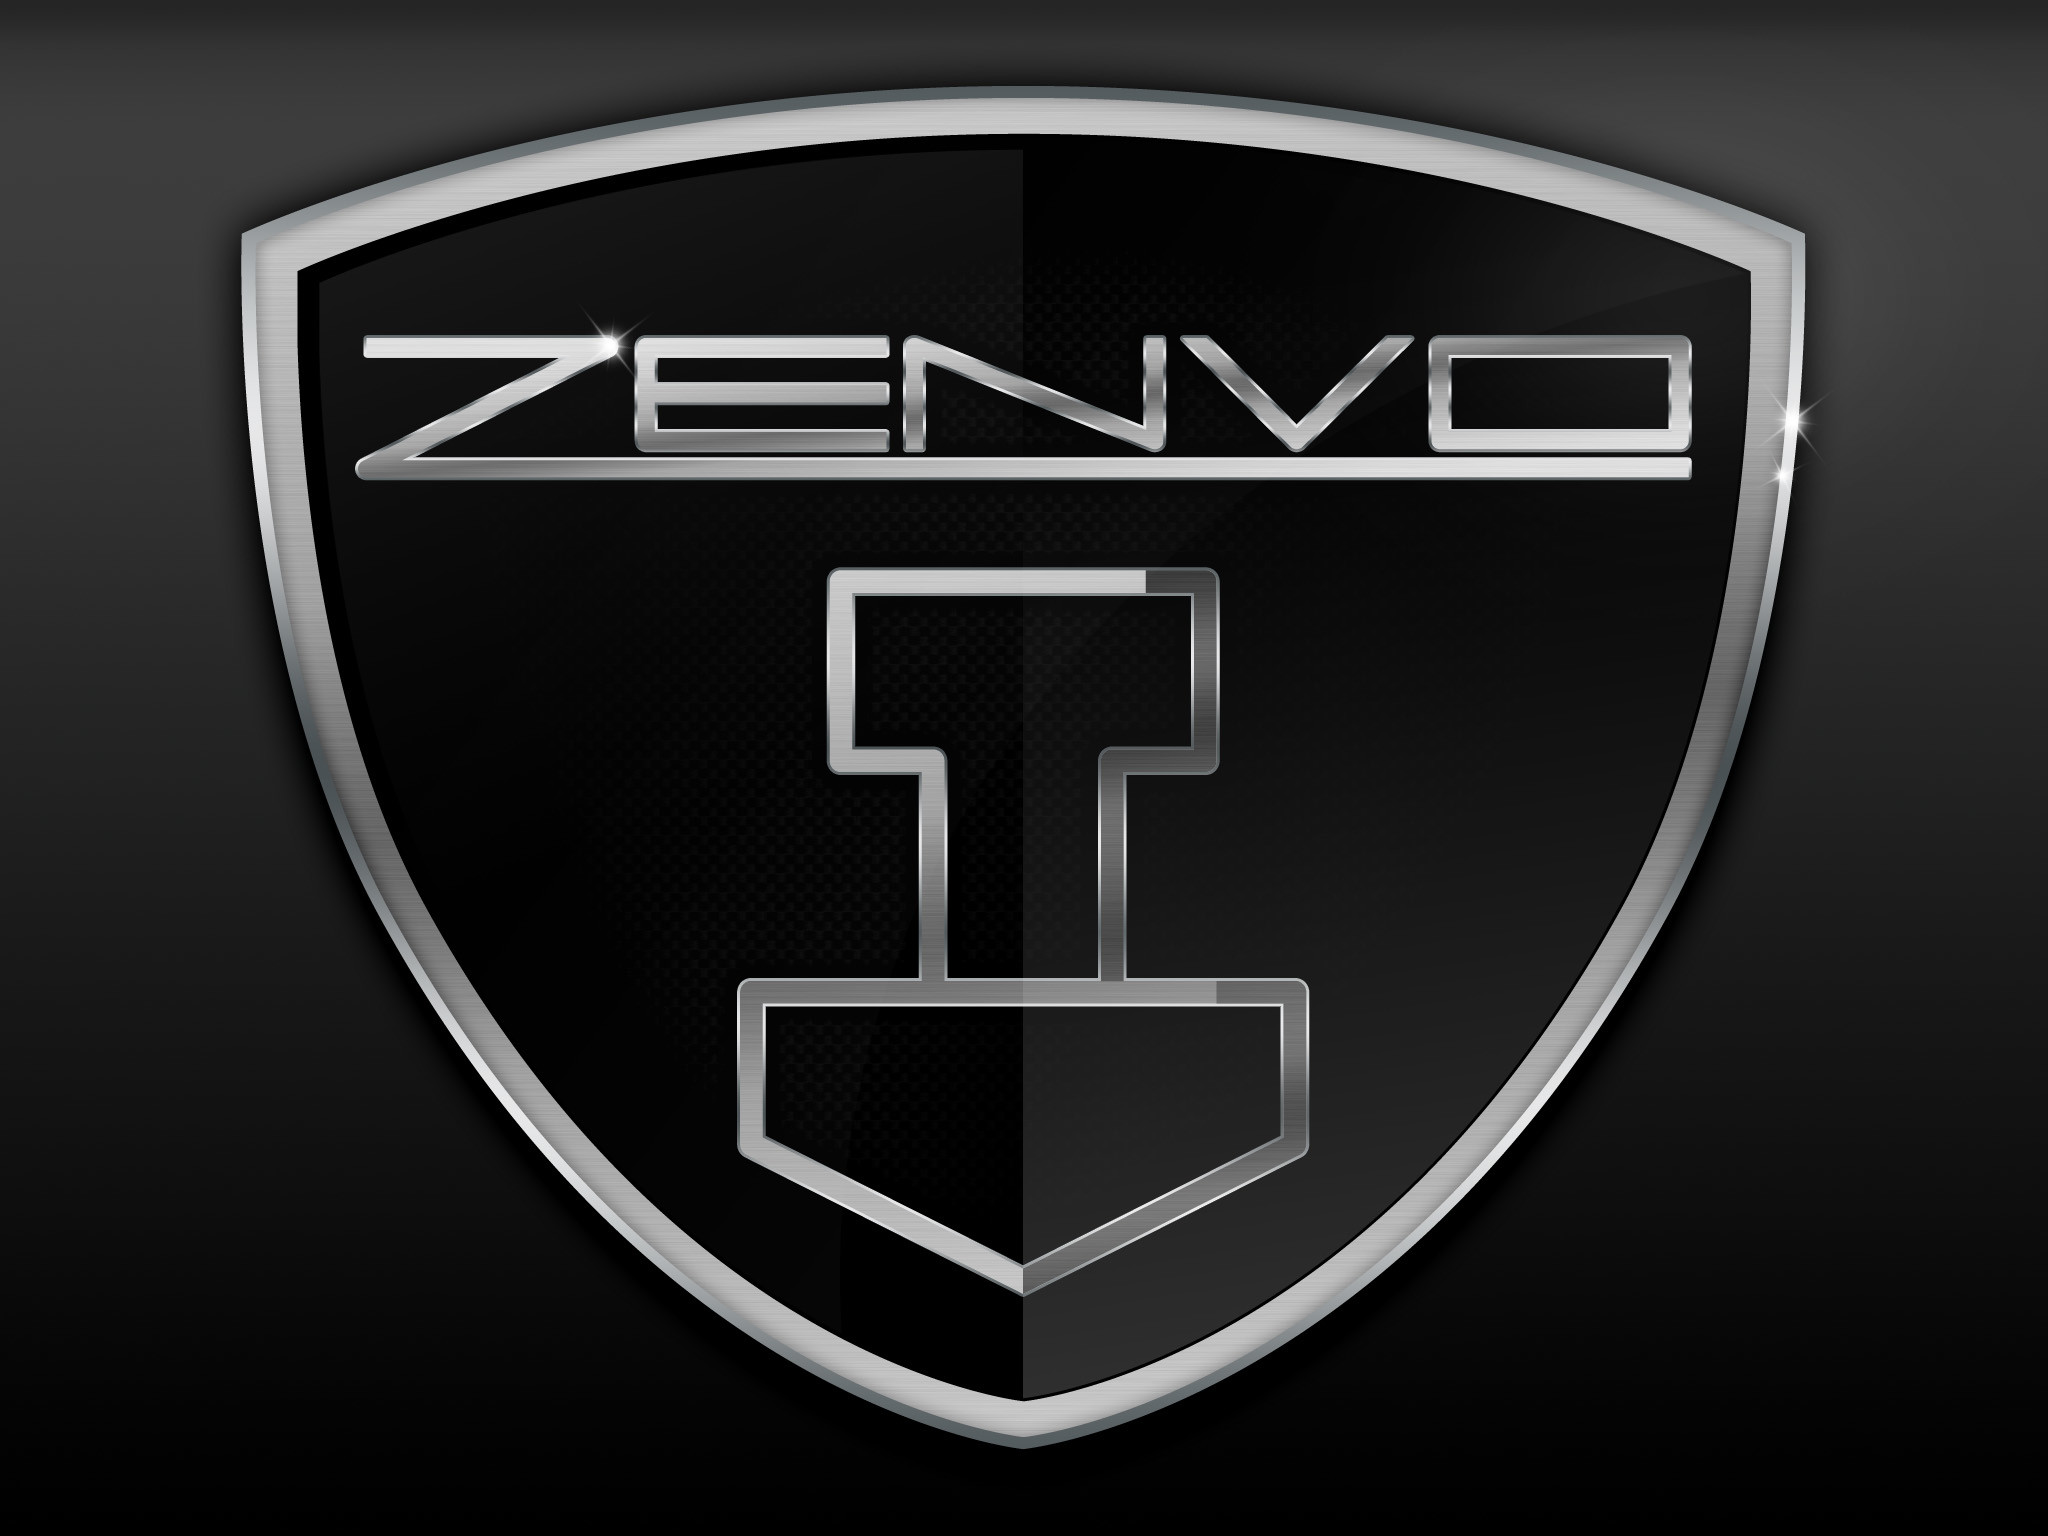 2048x1536 ZENVO logo hd - Google Search